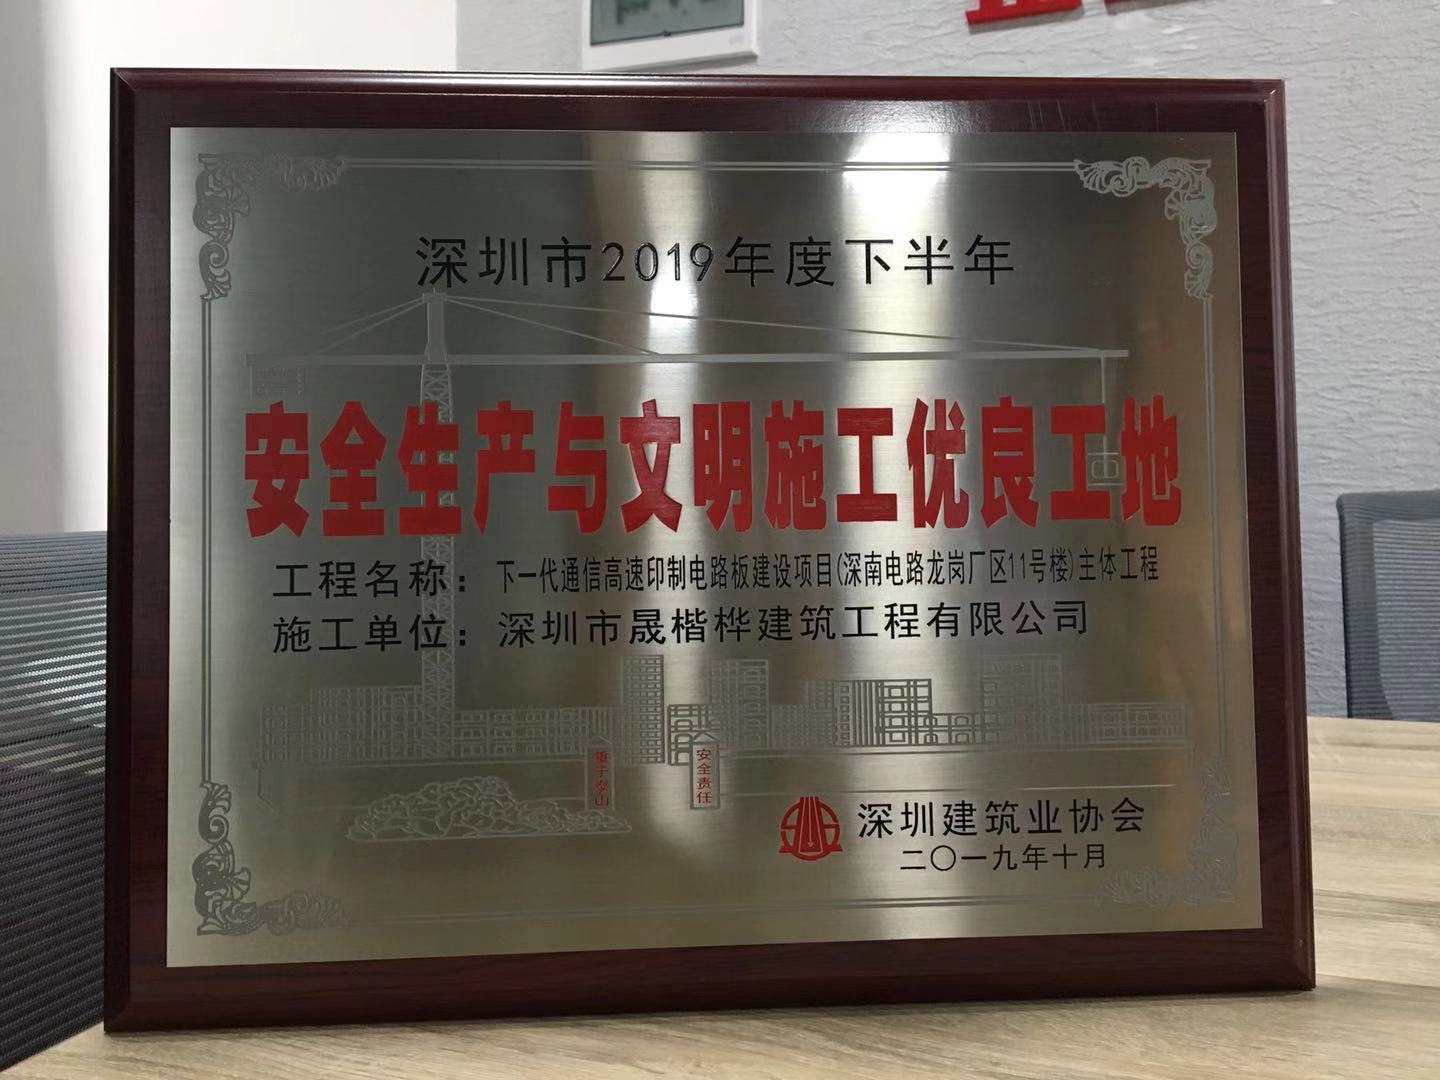 2019年下半年荣获“深圳市建设工程安全生产与文